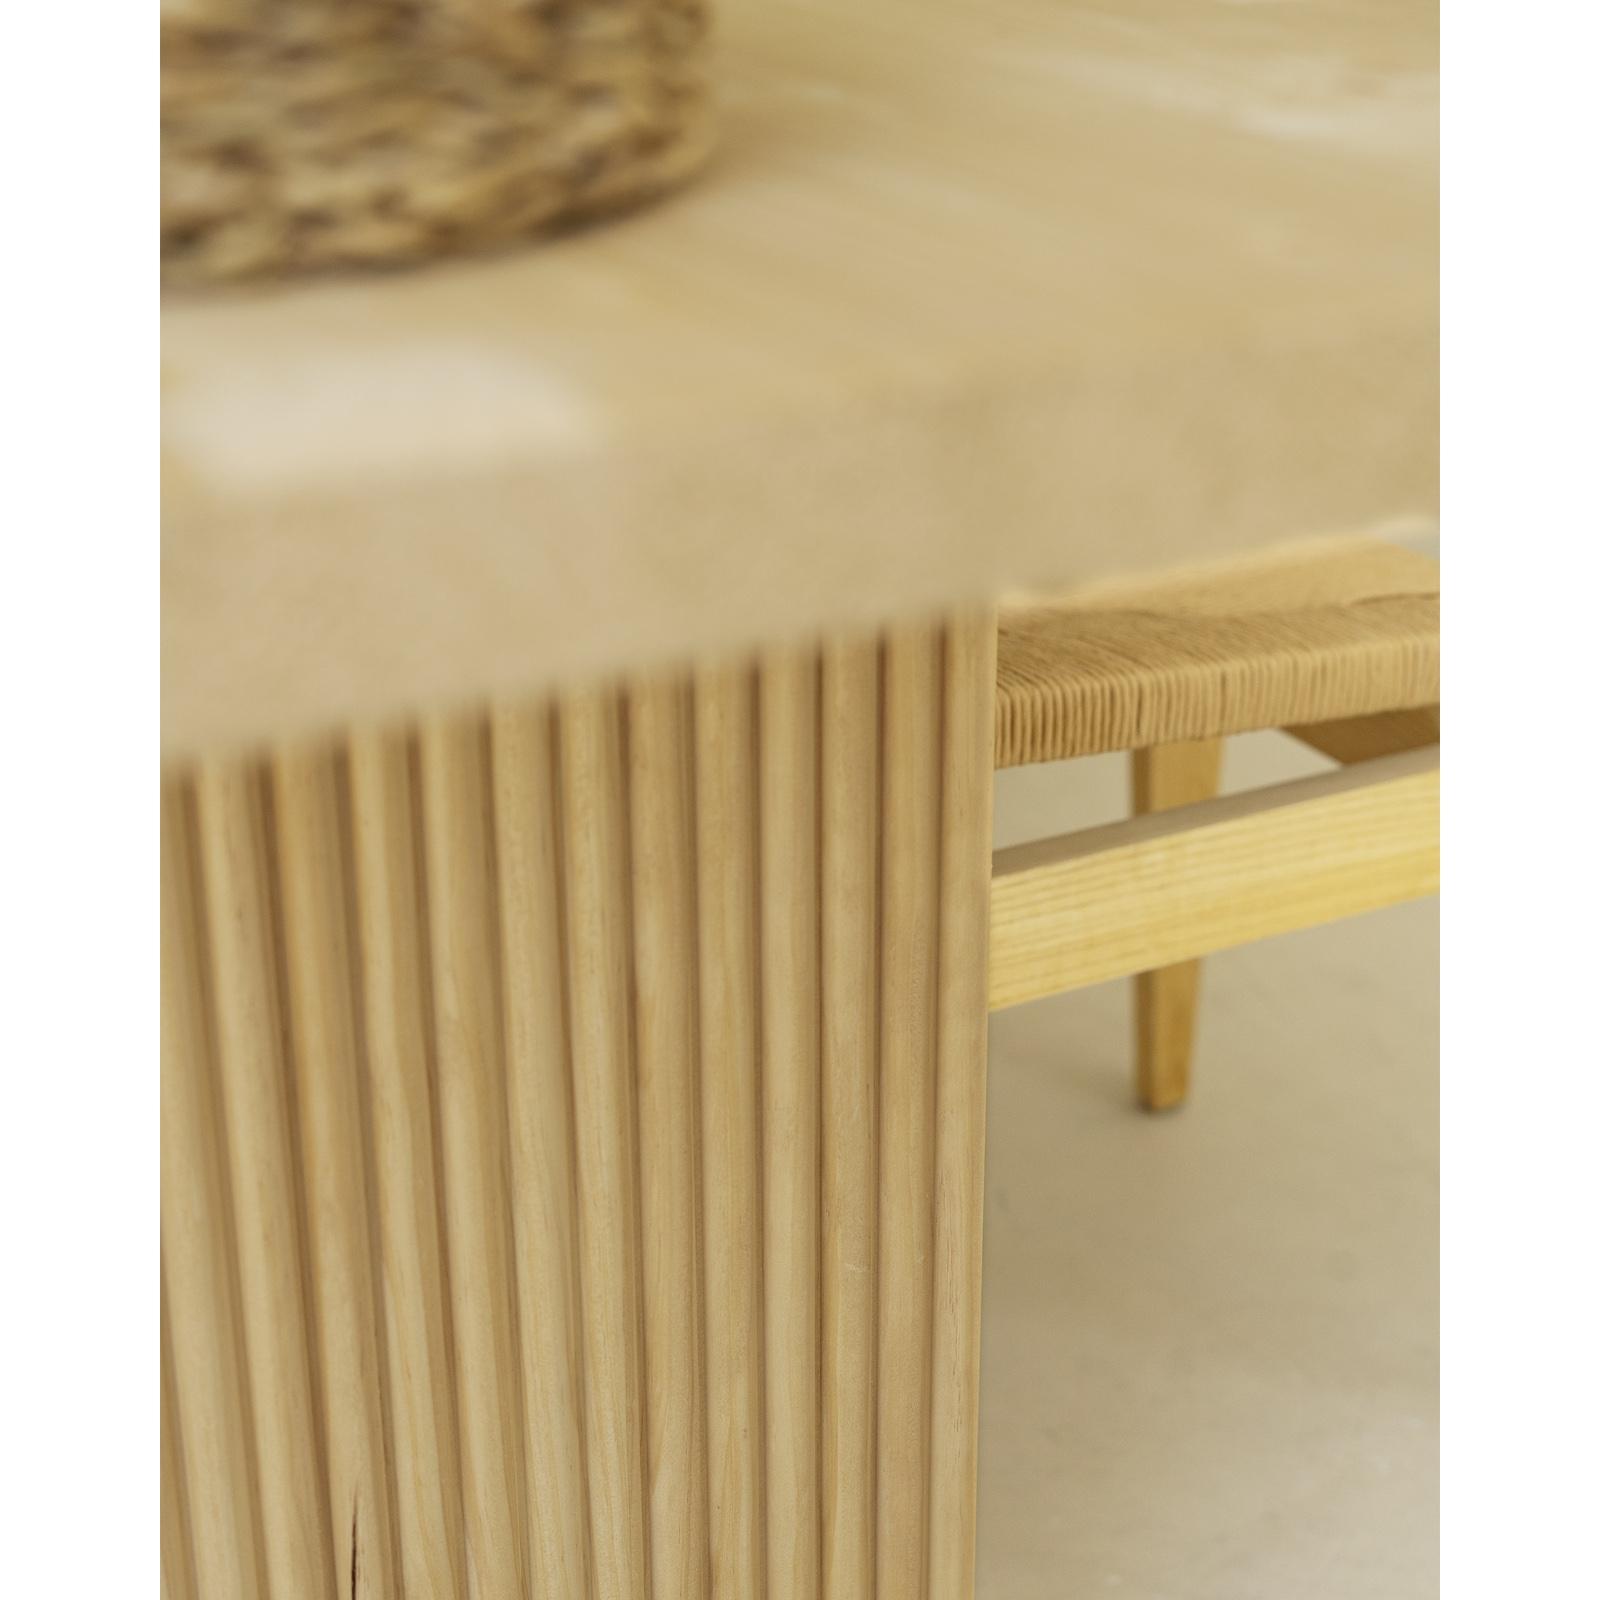 Table de salle à manger en bois massif dans le ton du bois naturel de différentes tailles